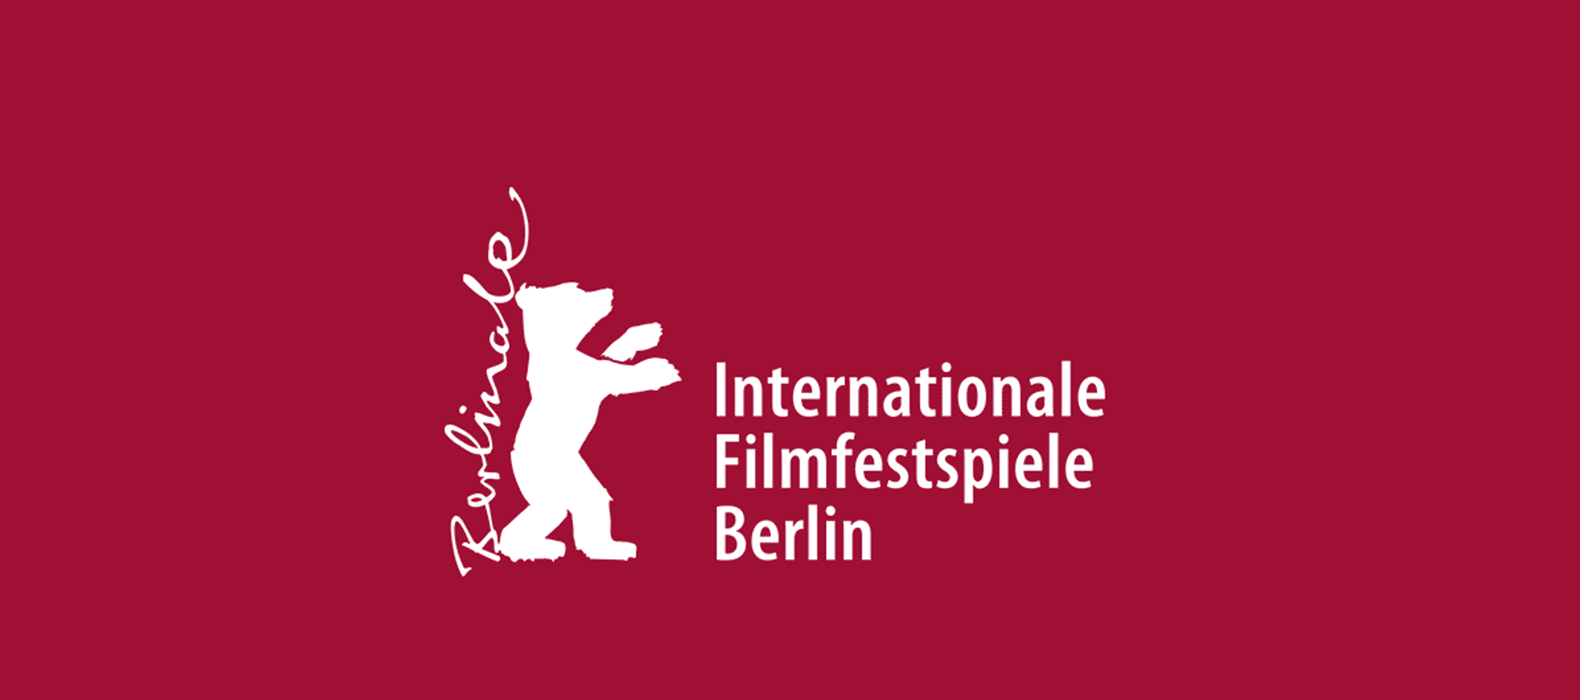 جشنواره بین المللی فیلم برلین